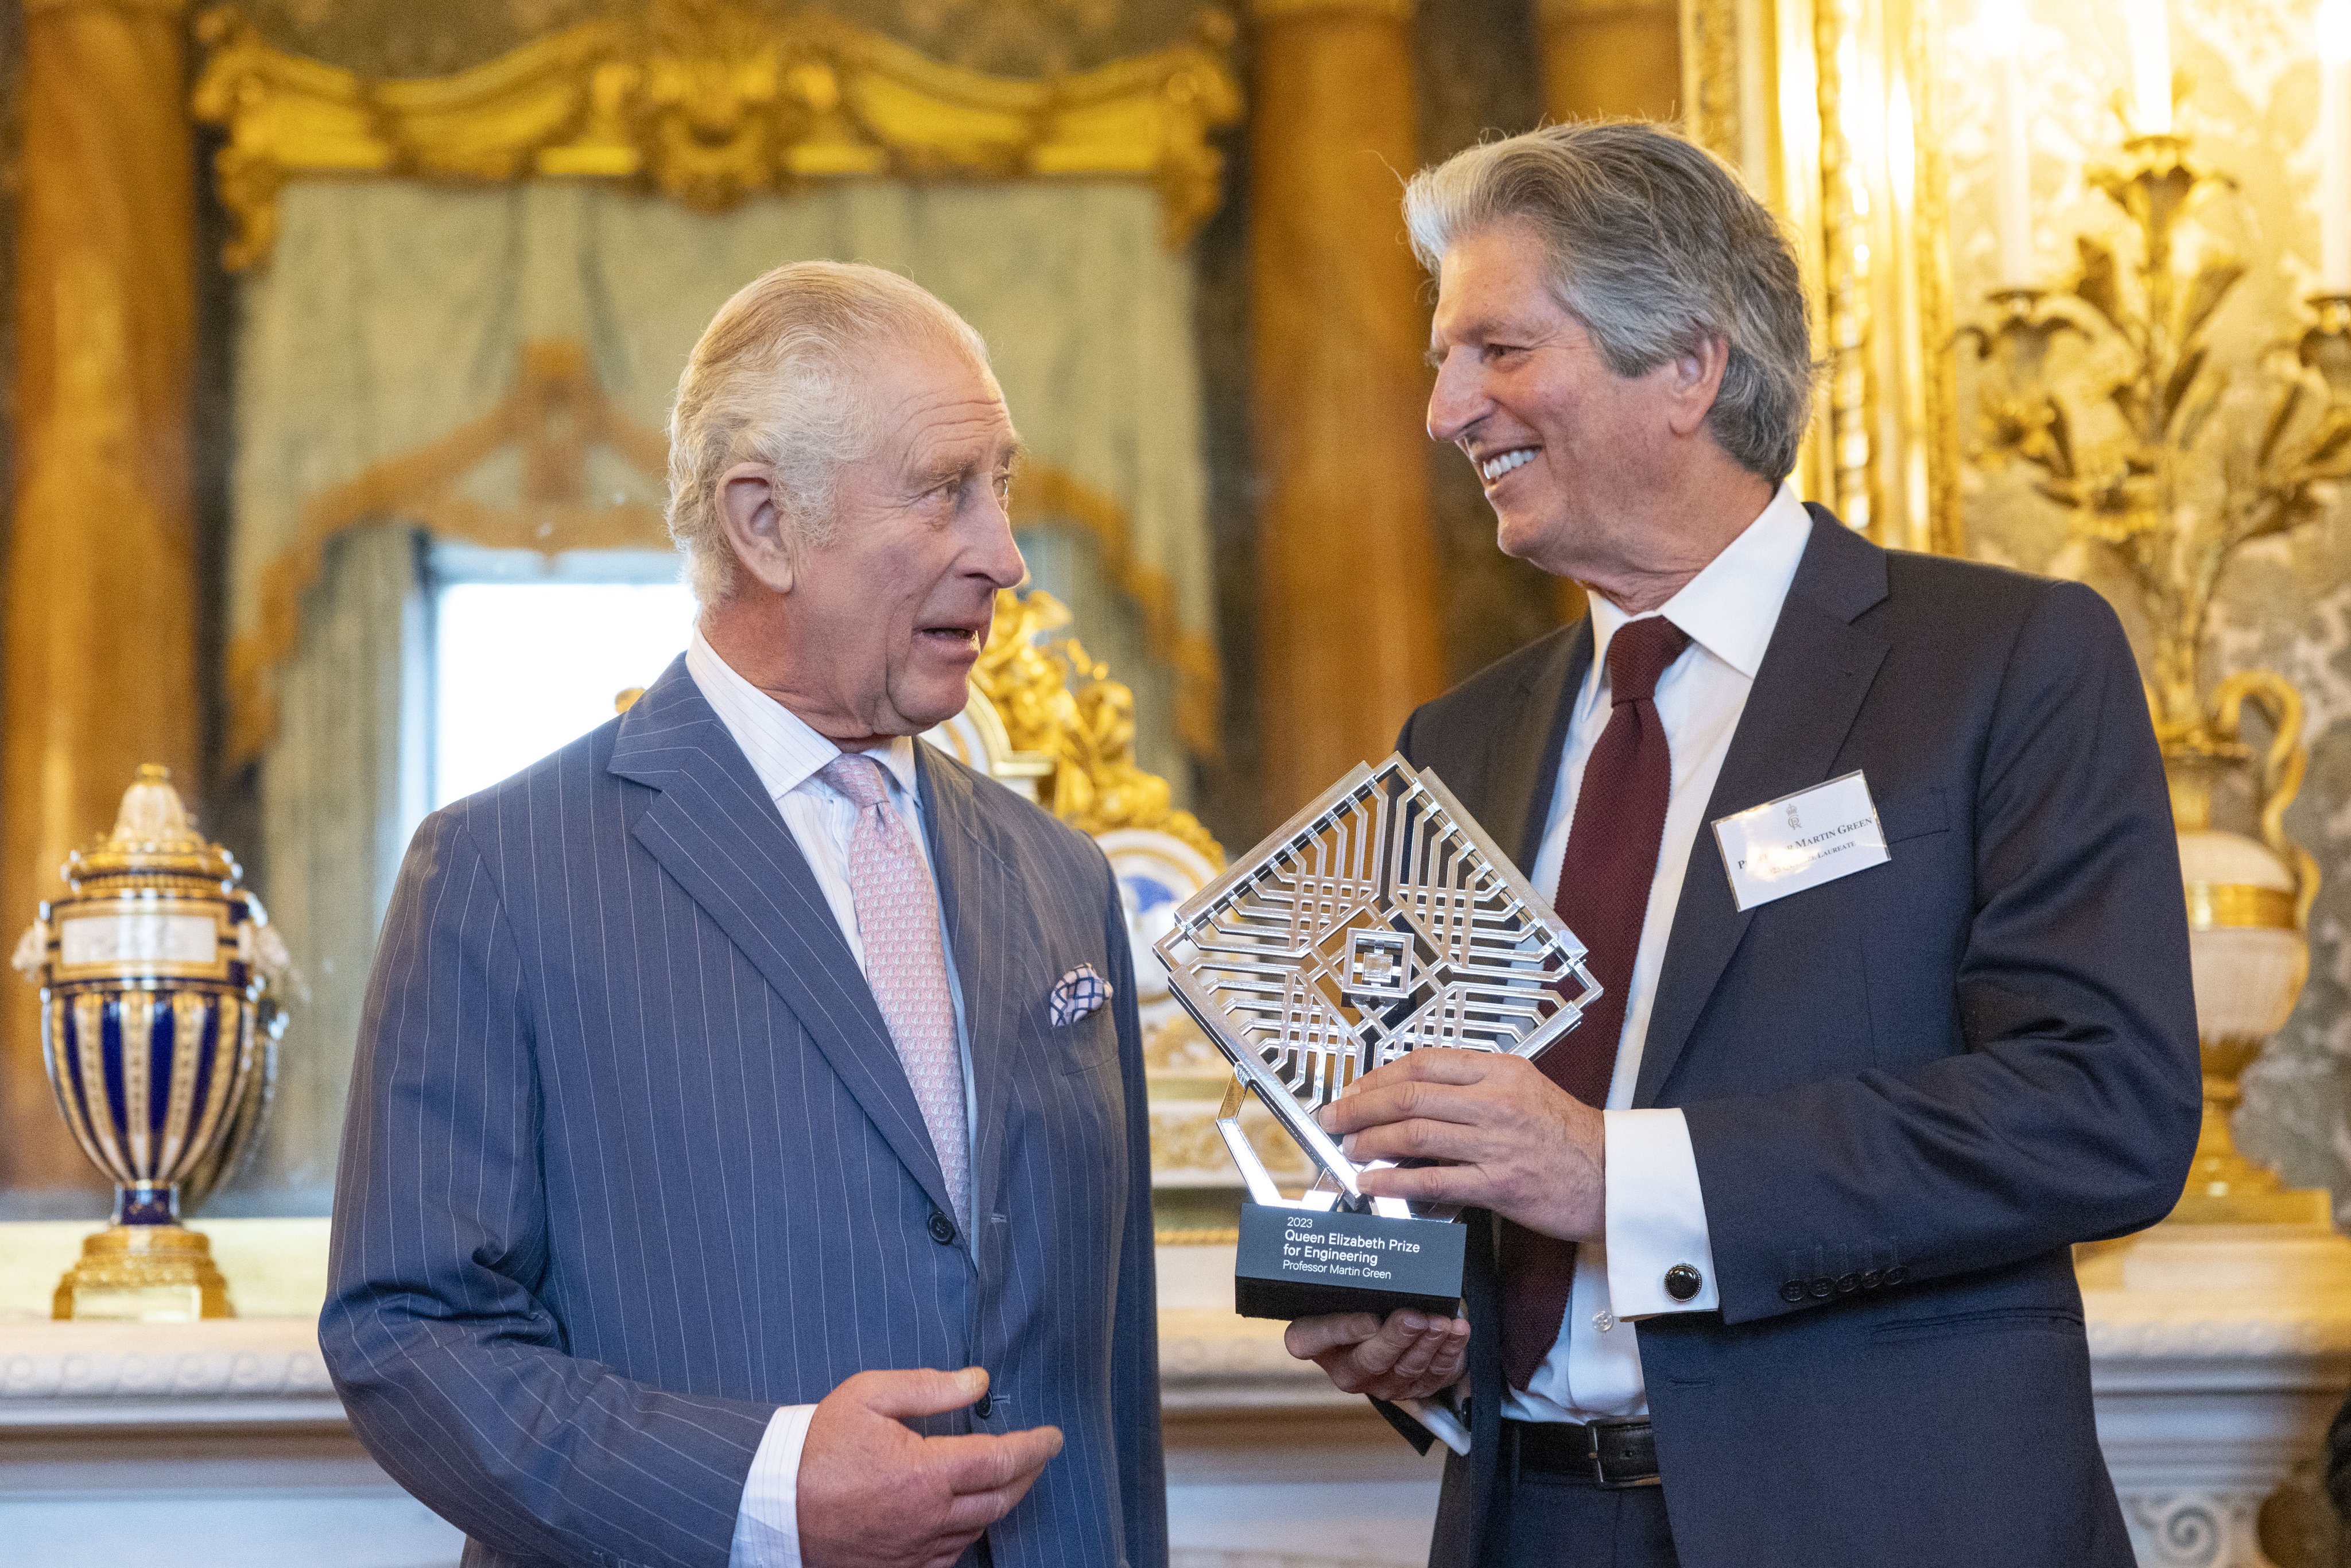 Vua Charles III (bên trái) trao cho GS. Martin Andrew Green (Đại học New South Wales, Úc) Giải thưởng Sáng kiến Kỹ thuật từ Nữ Hoàng Anh Queen Elizabeth tại cung điện Buckingham. GS. Green vừa nhận Giải thưởng chính của VinFuture năm nay. Ảnh: Queen Elizabeth Prize For Engineering